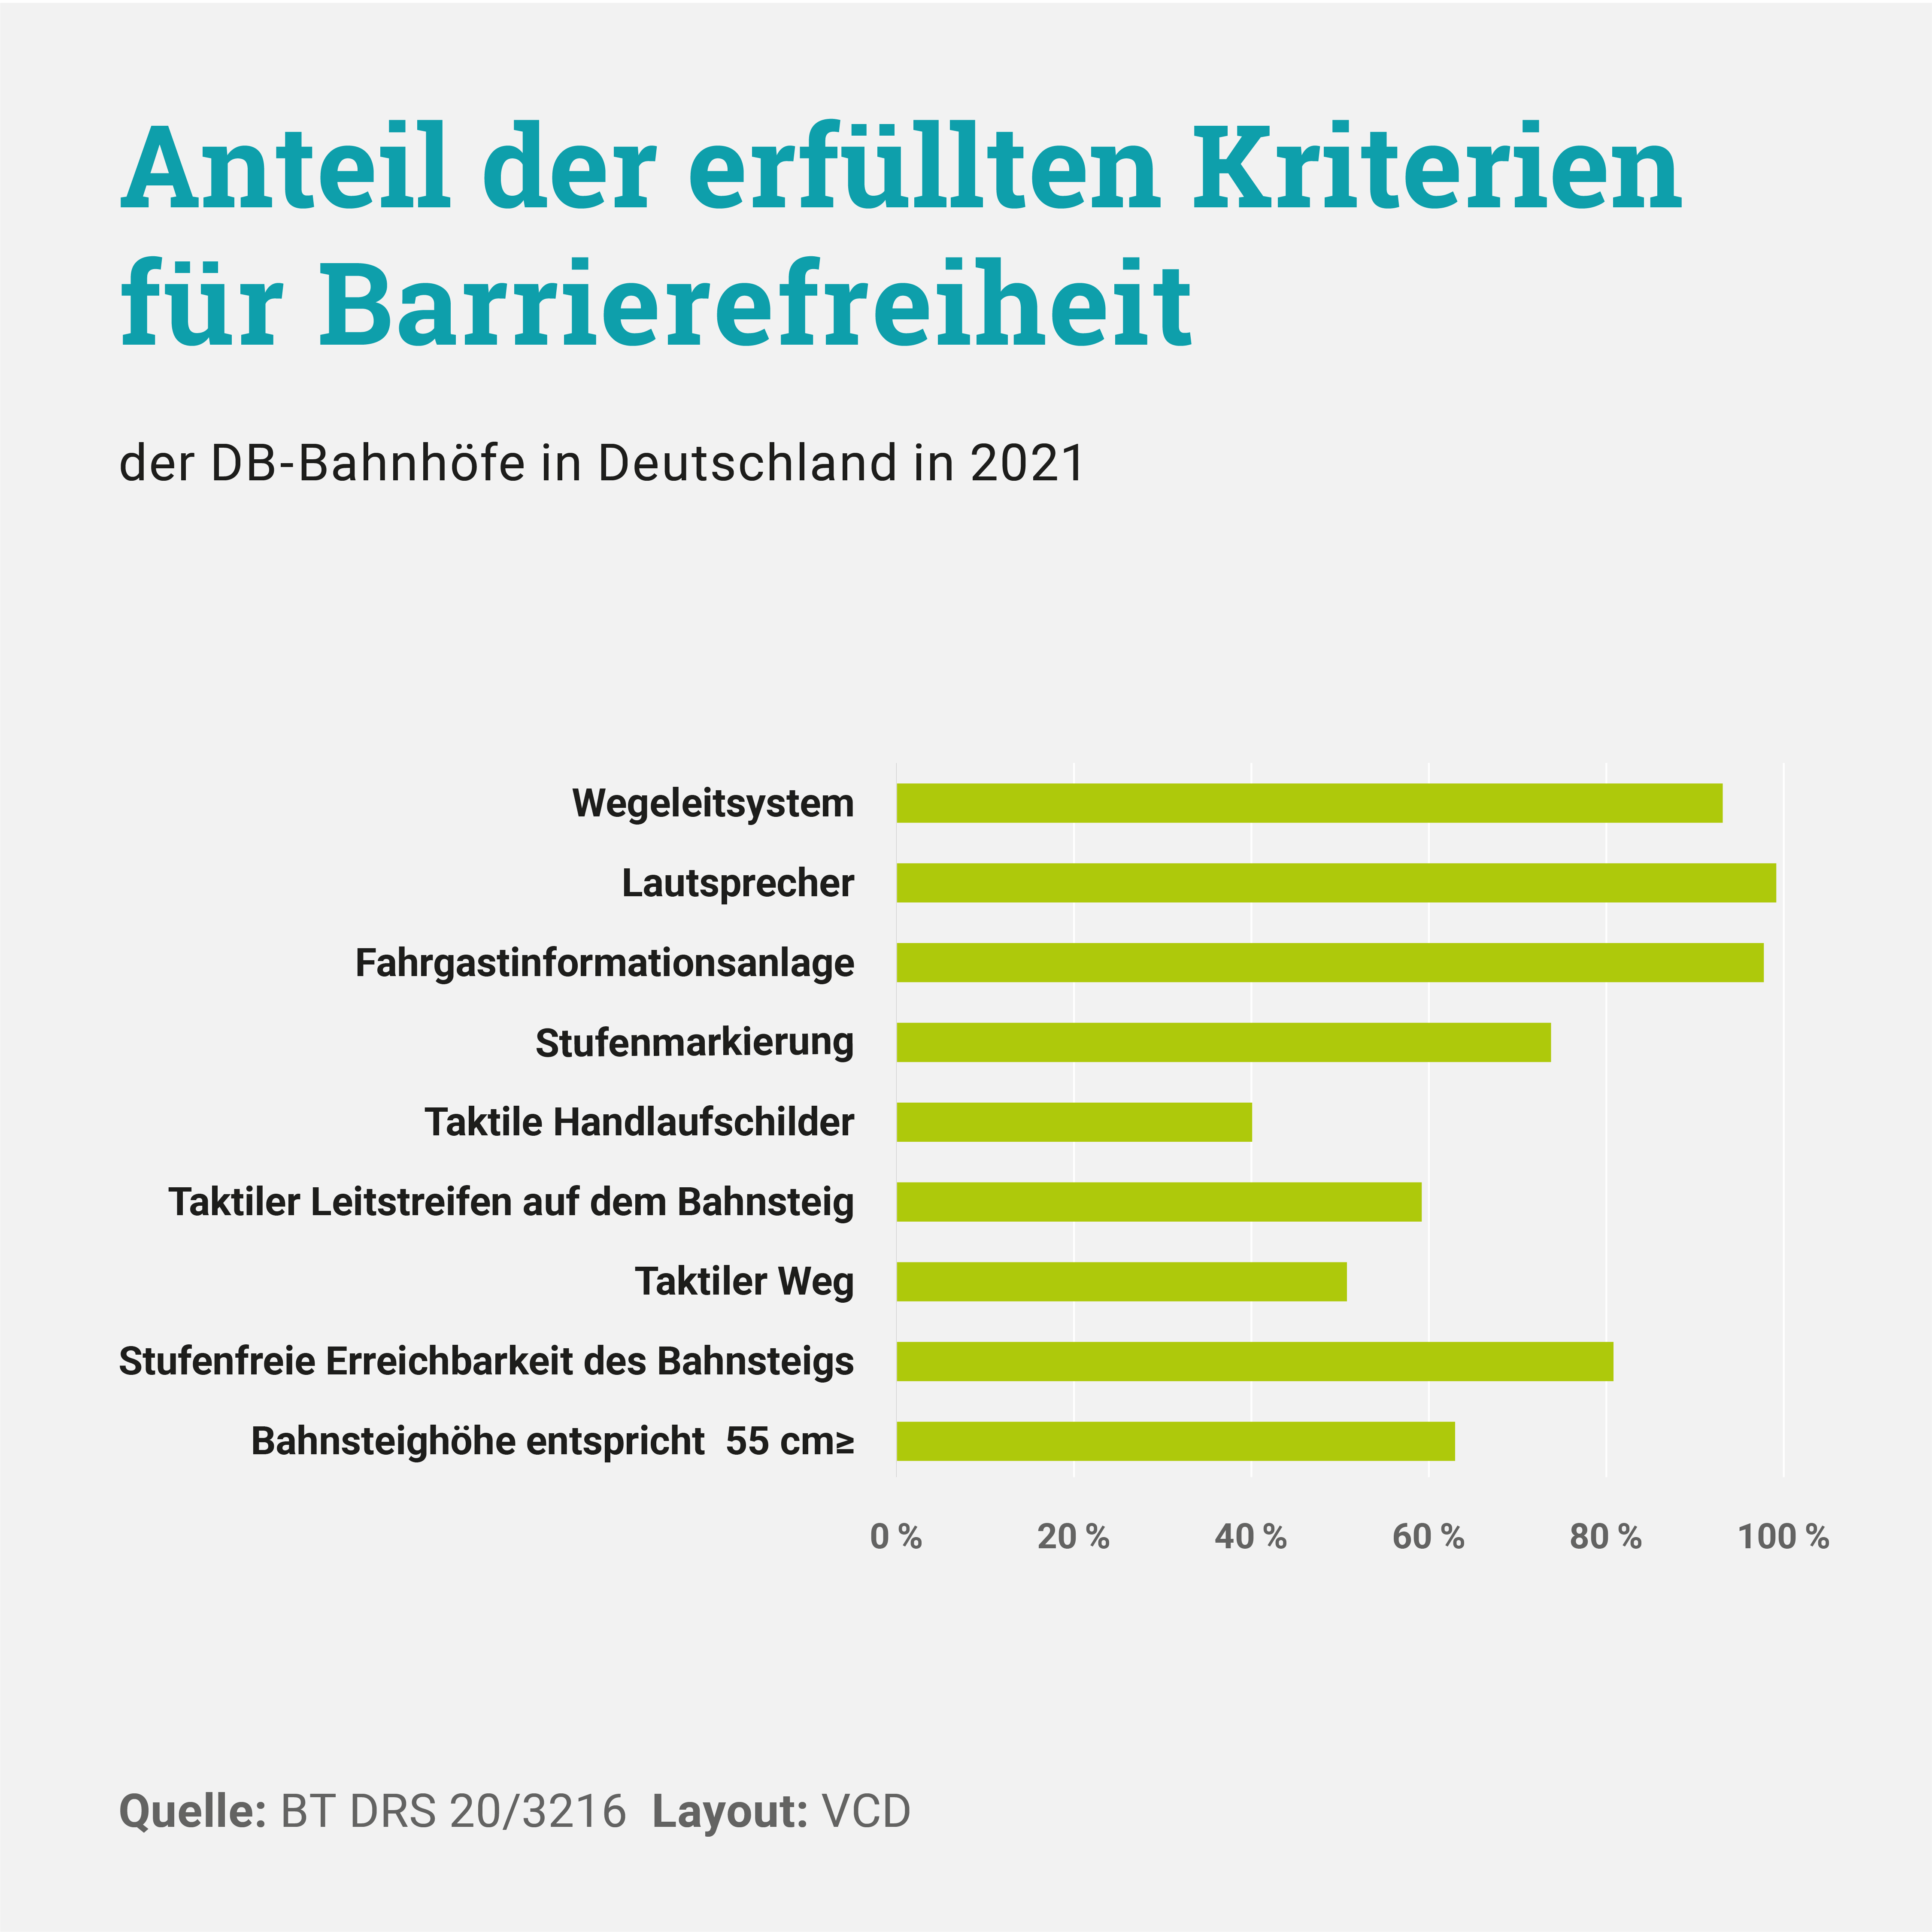 Die Grafik zeigt den Anteil der erfüllten Kriterien für Barrierefreiheit der DB-Bahnhöfe in Deutschland in 2021.  Wegeleitsystem: 93 Prozent,  Lautsprecher: 99 Prozent, Fahrgastinformationsanlage: 98 Prozent, Stufenmarkierung: 74 Prozent, Taktile Handlaufschilder: 40 Prozent, Taktiler Leitstreifen auf dem Bahnsteig: 59 Prozent, Taktiler Weg: 51 Prozent, stufenfreie Erreichbarkeit des Bahnsteigs: 81 Prozent, Bahnsteighöhe entspricht größer gleich 55cm: 63 Prozent.